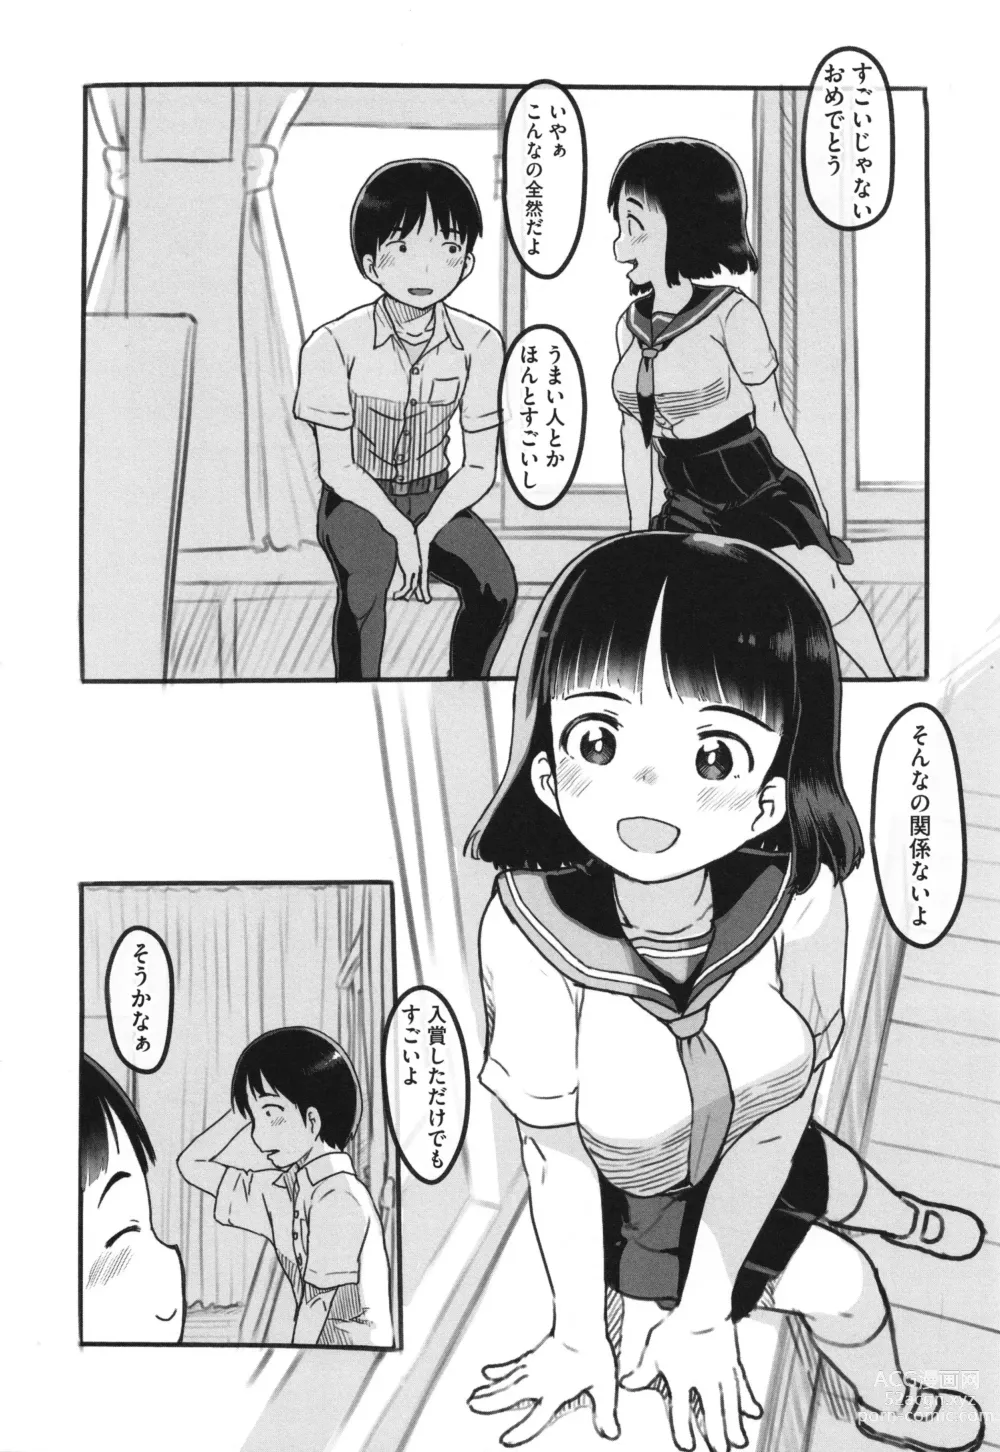 Page 9 of manga Kanojo wa Mada Kaette Inai